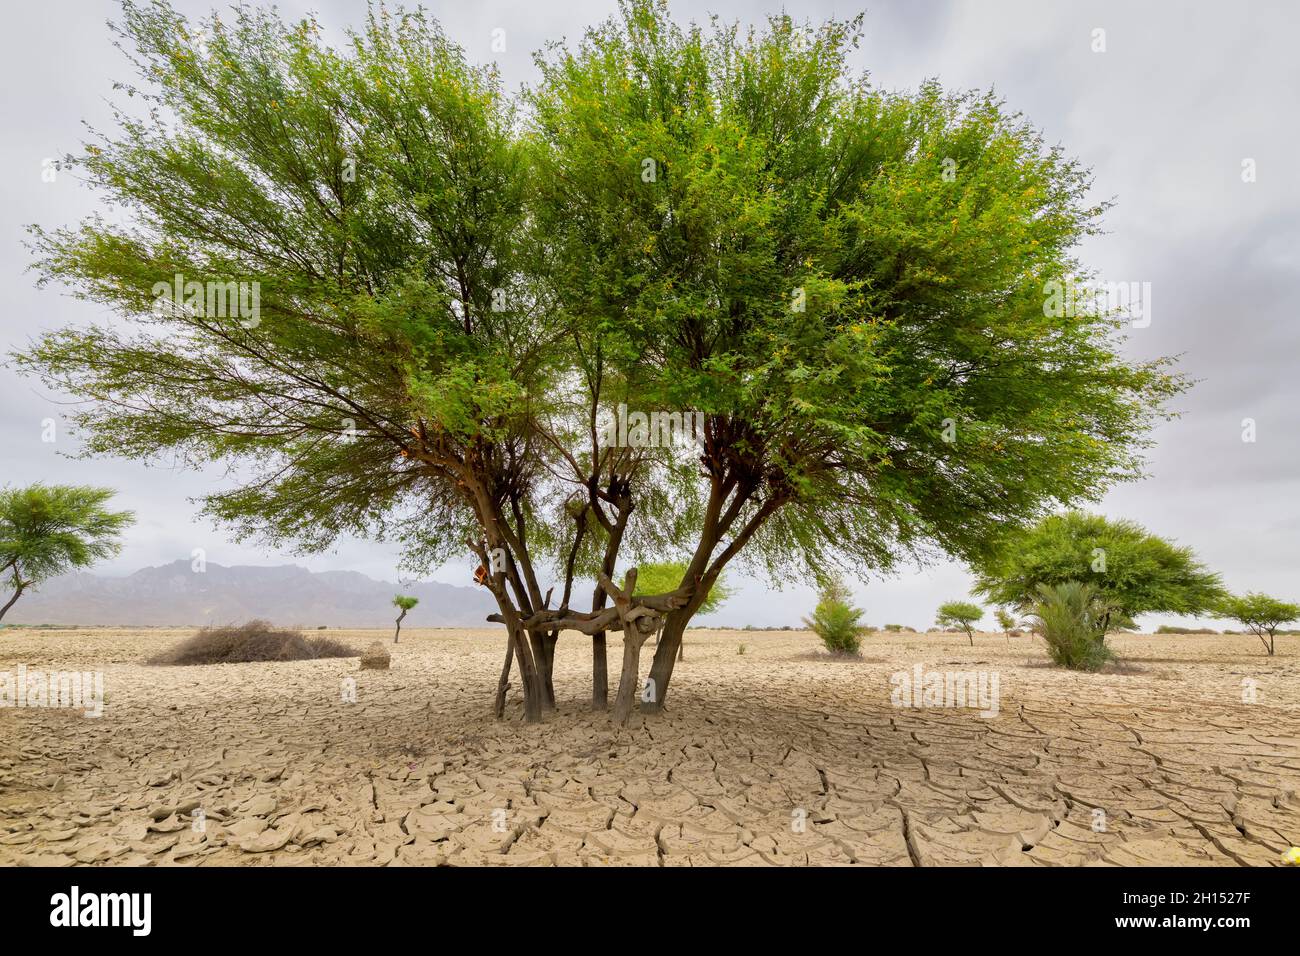 Einsamer großer grüner Baum in trockener Ödland ein Konzept für die globale Erwärmung. Braune Trockenheit trockener Landboden oder gerissene Bodenstruktur und grüner Baum mit von ag Stockfoto